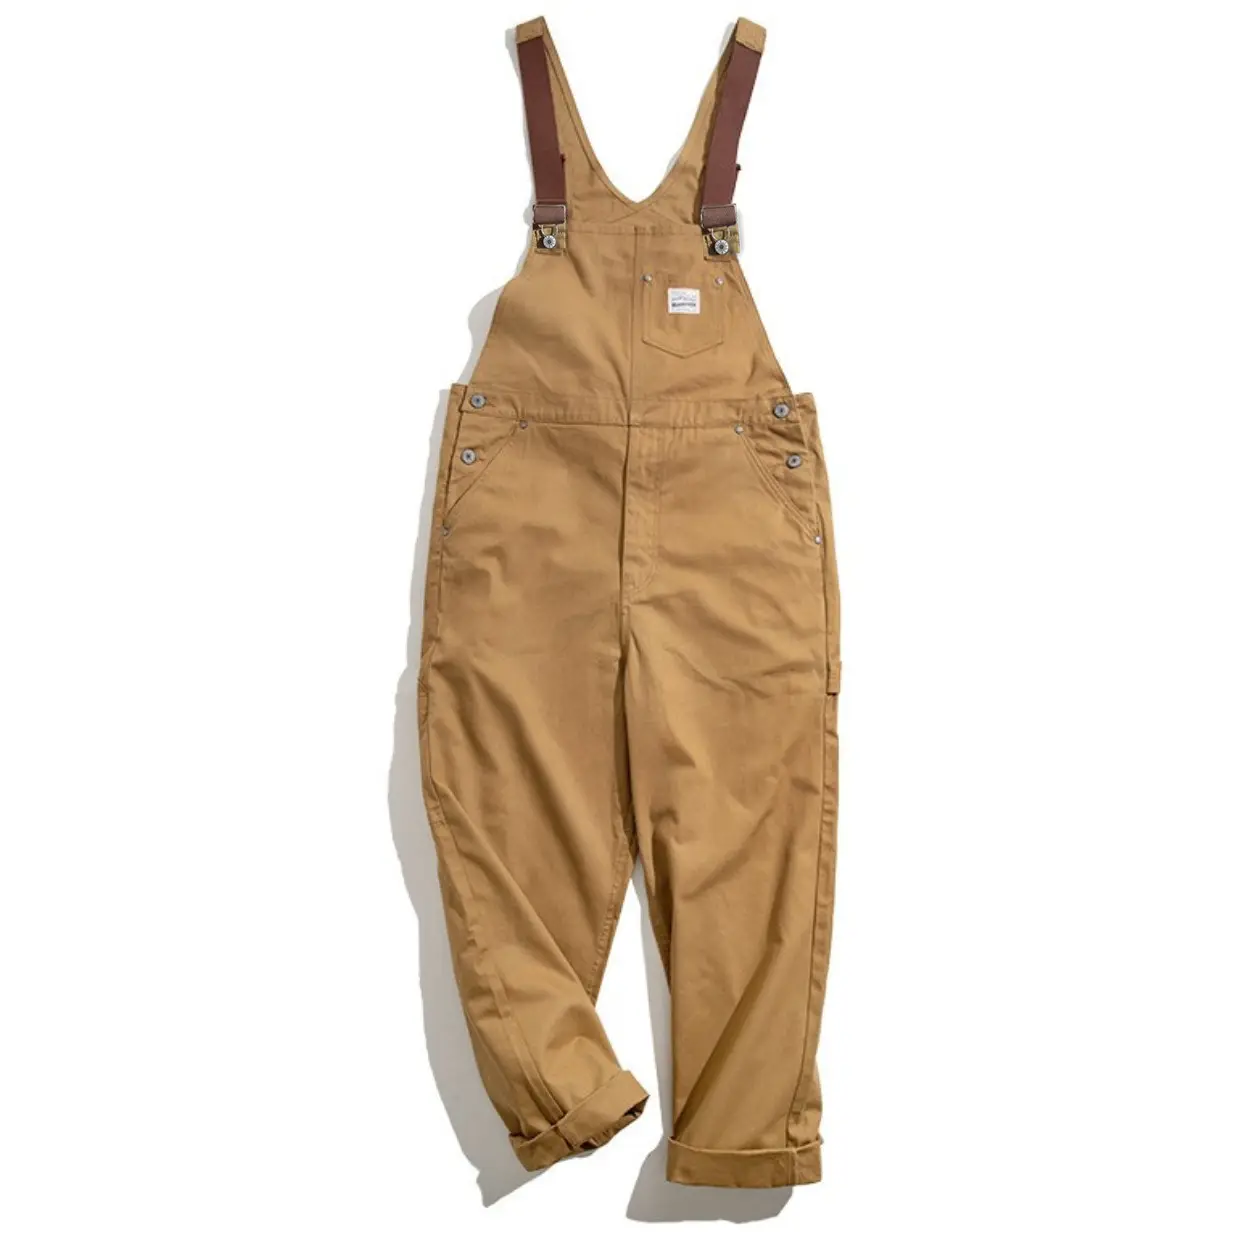 Alta calidad Retro caqui lona Correa pantalones industria trabajadores ropa de trabajo monos ropa de trabajo